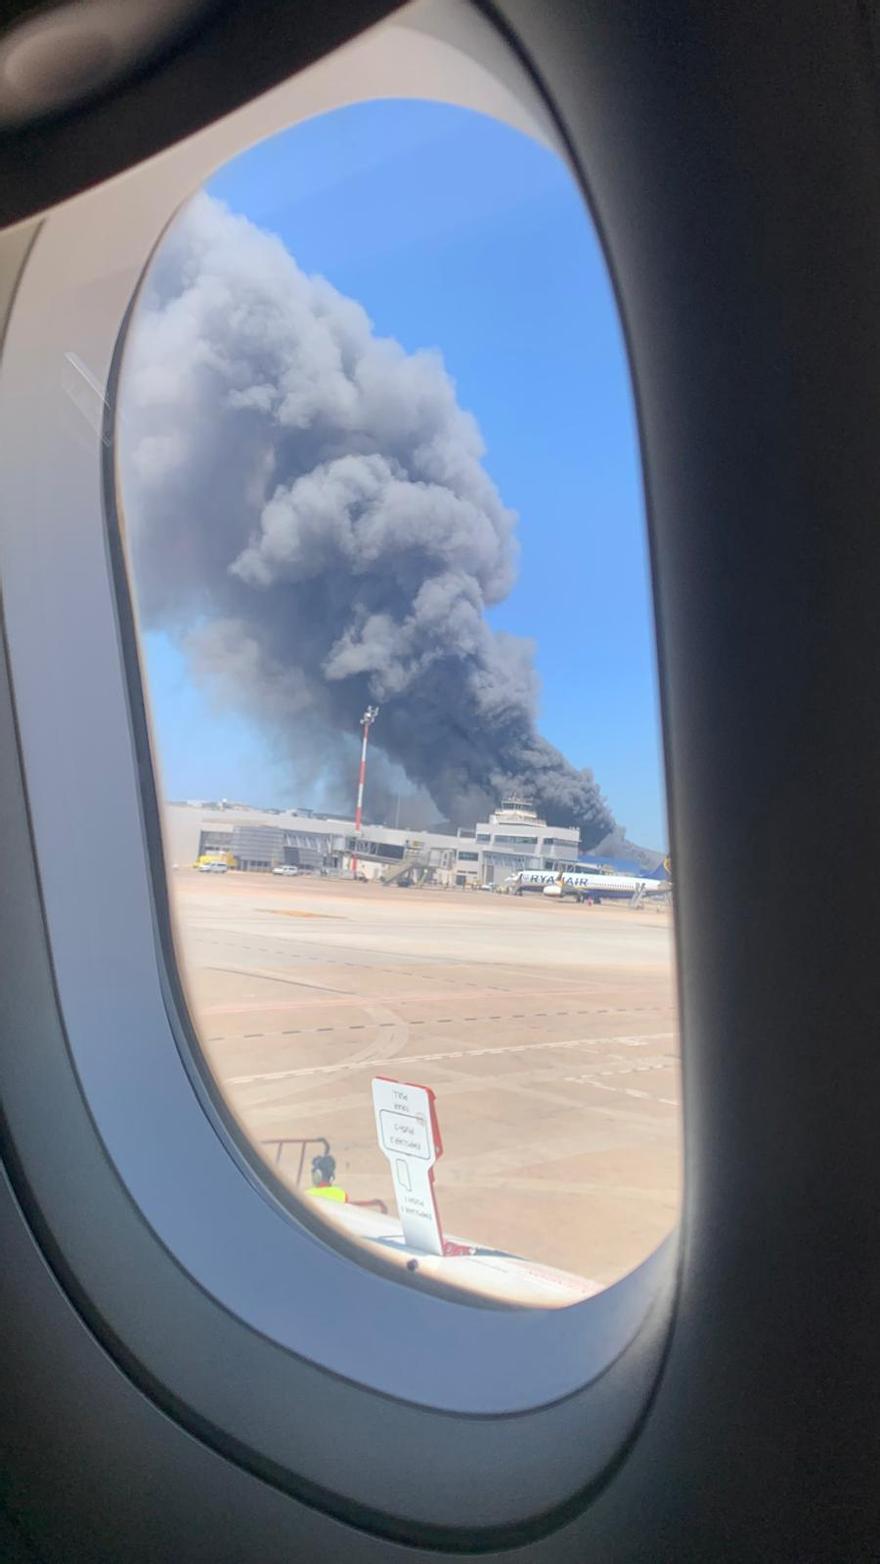 Imágenes del incendio en una nave cercana al aeropuerto de Ibiza.